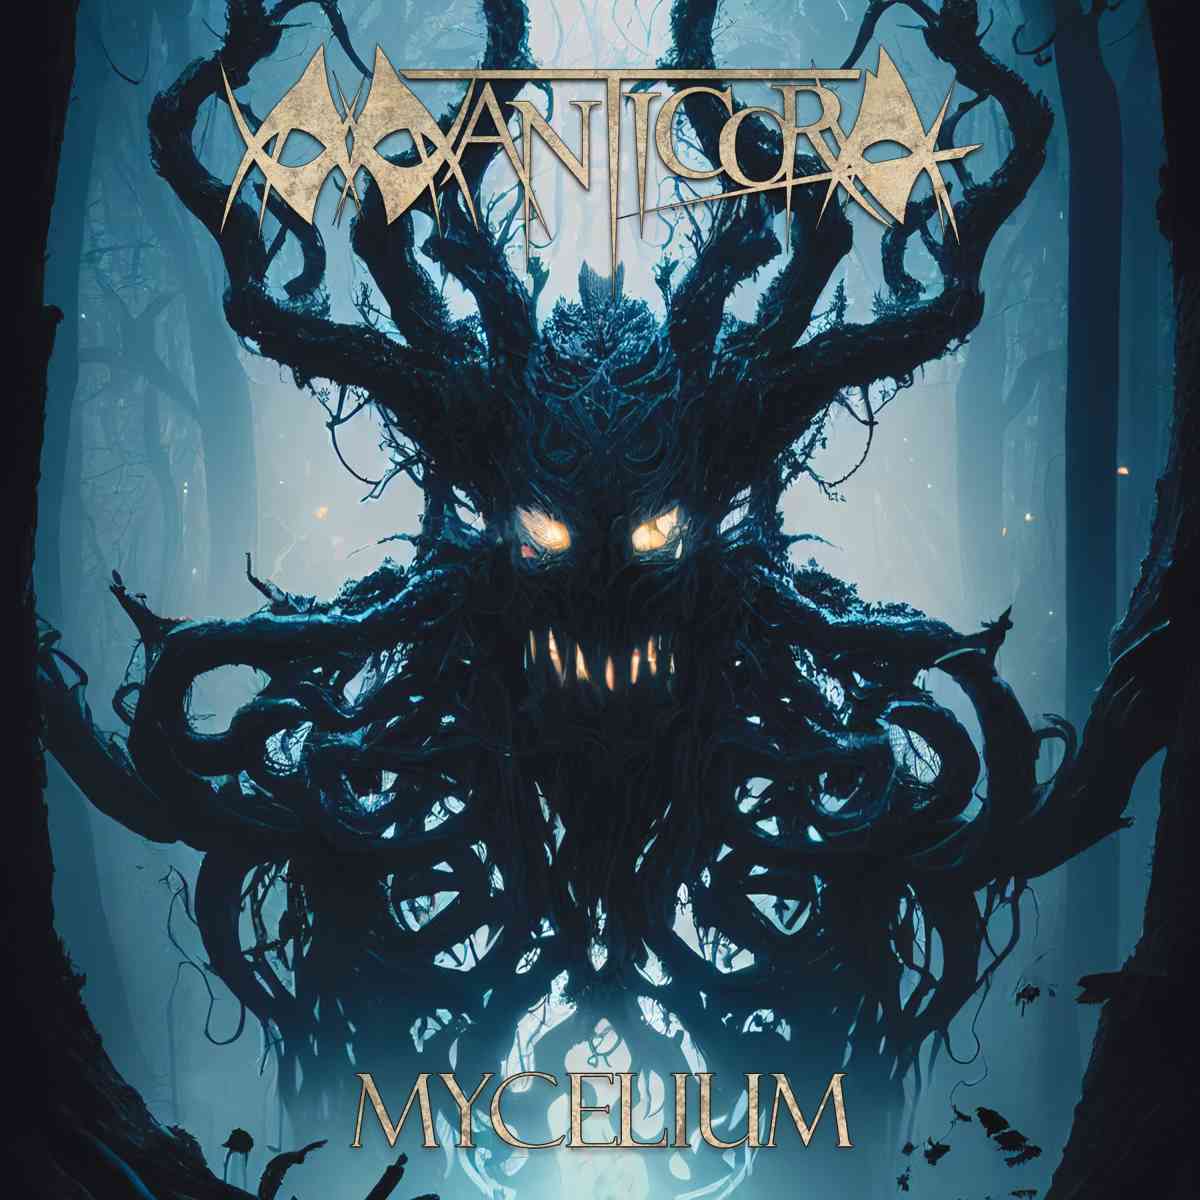 manticora - mycelium - album cover